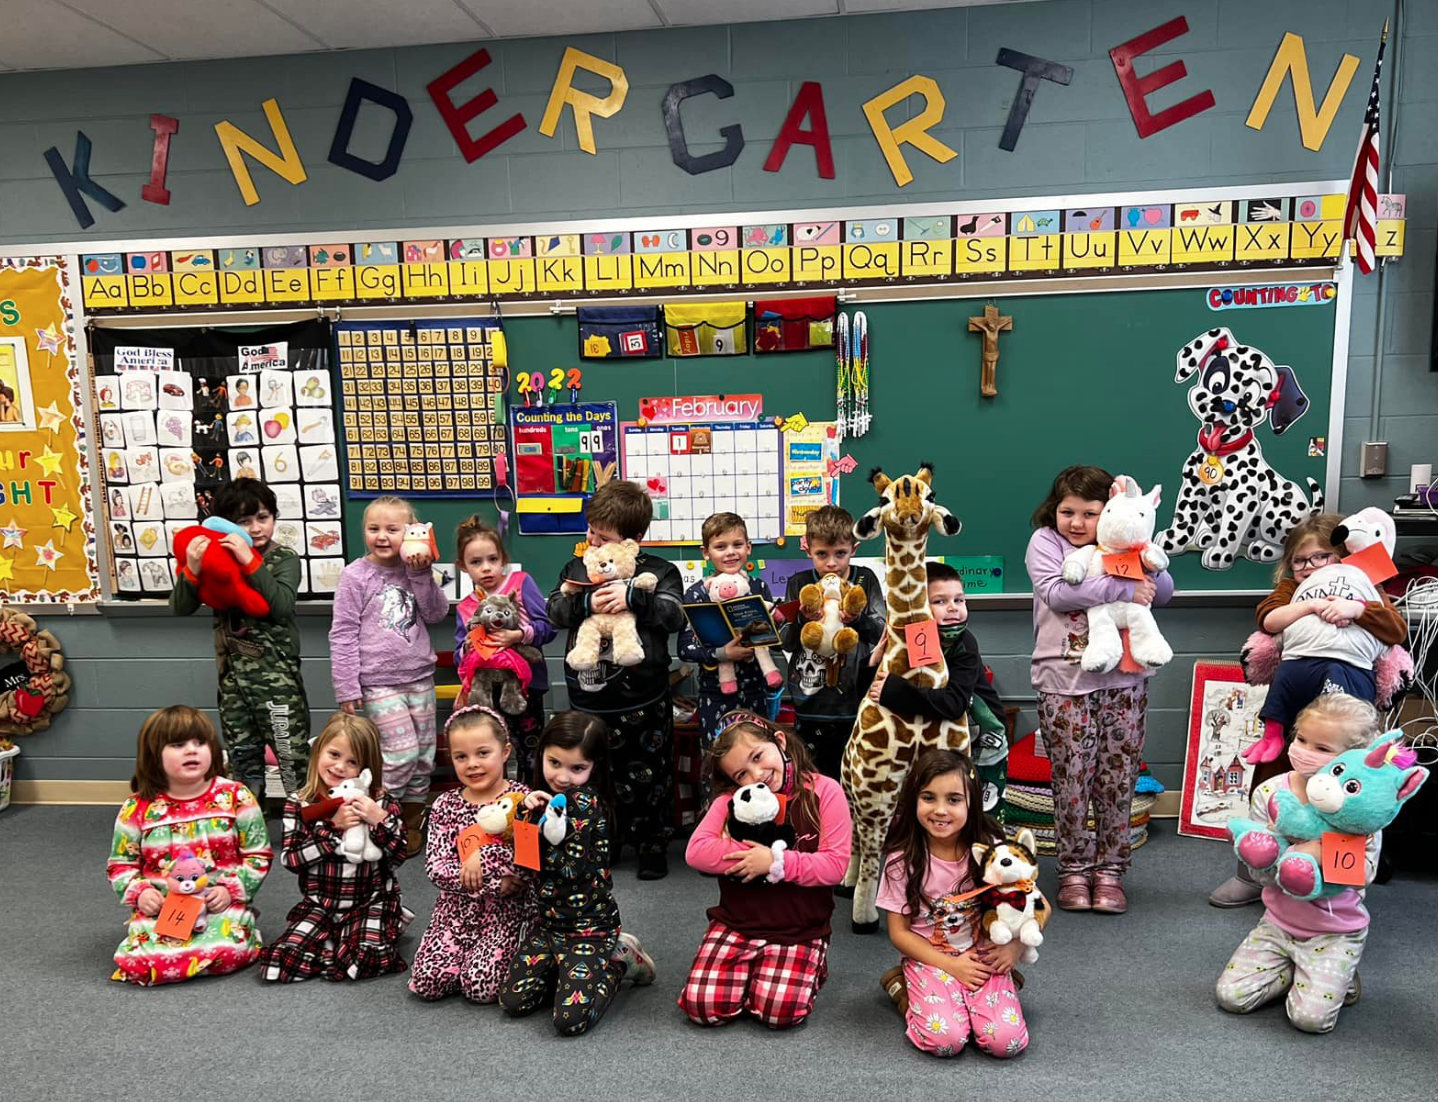 Kindergarten kids with teddy bears